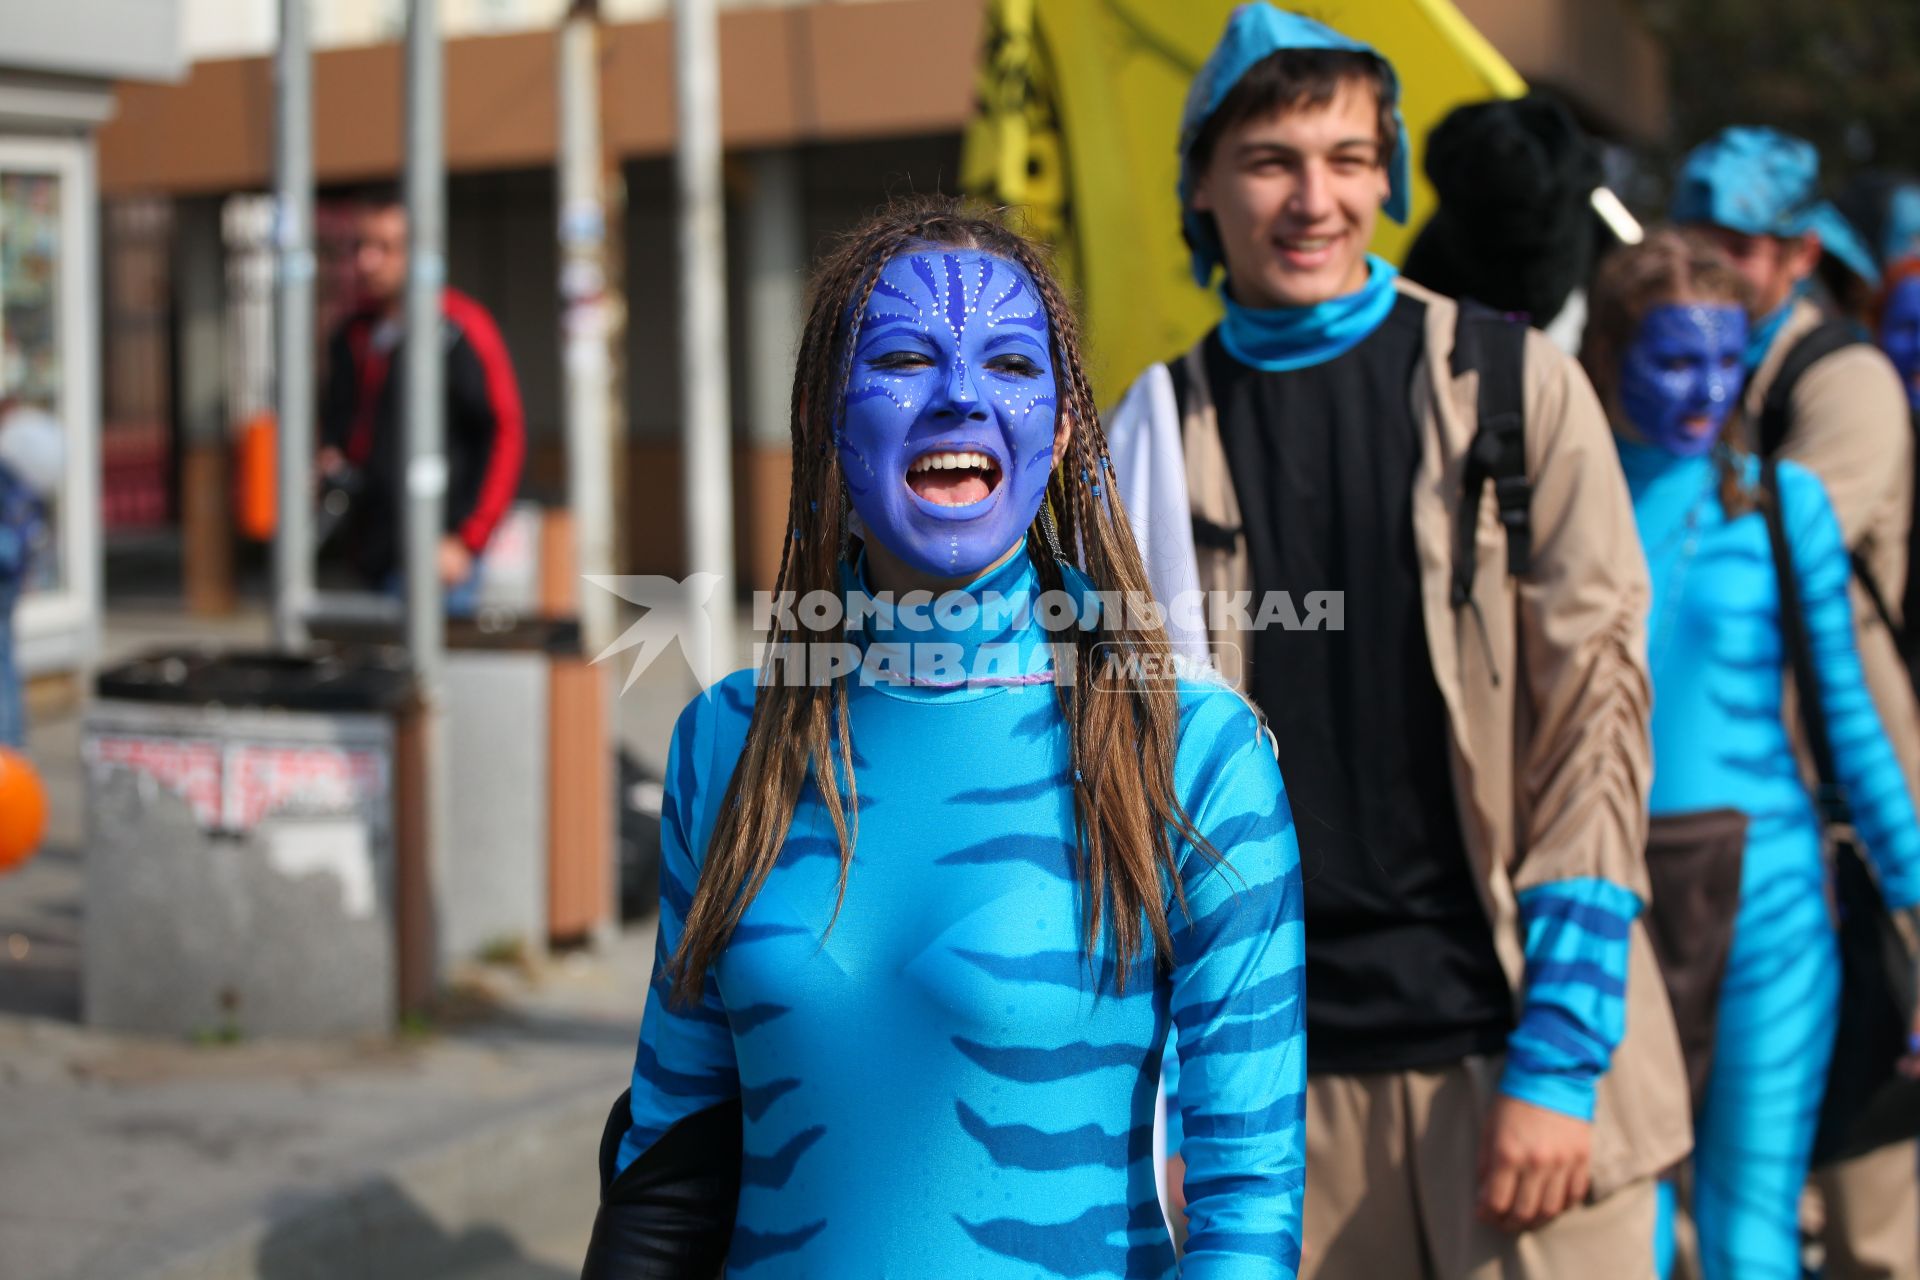 Карнавальное шествие в Владивостоке в честь празднования деня тигра. На снимке: девушка в костюме героя фильма `Аватар`.